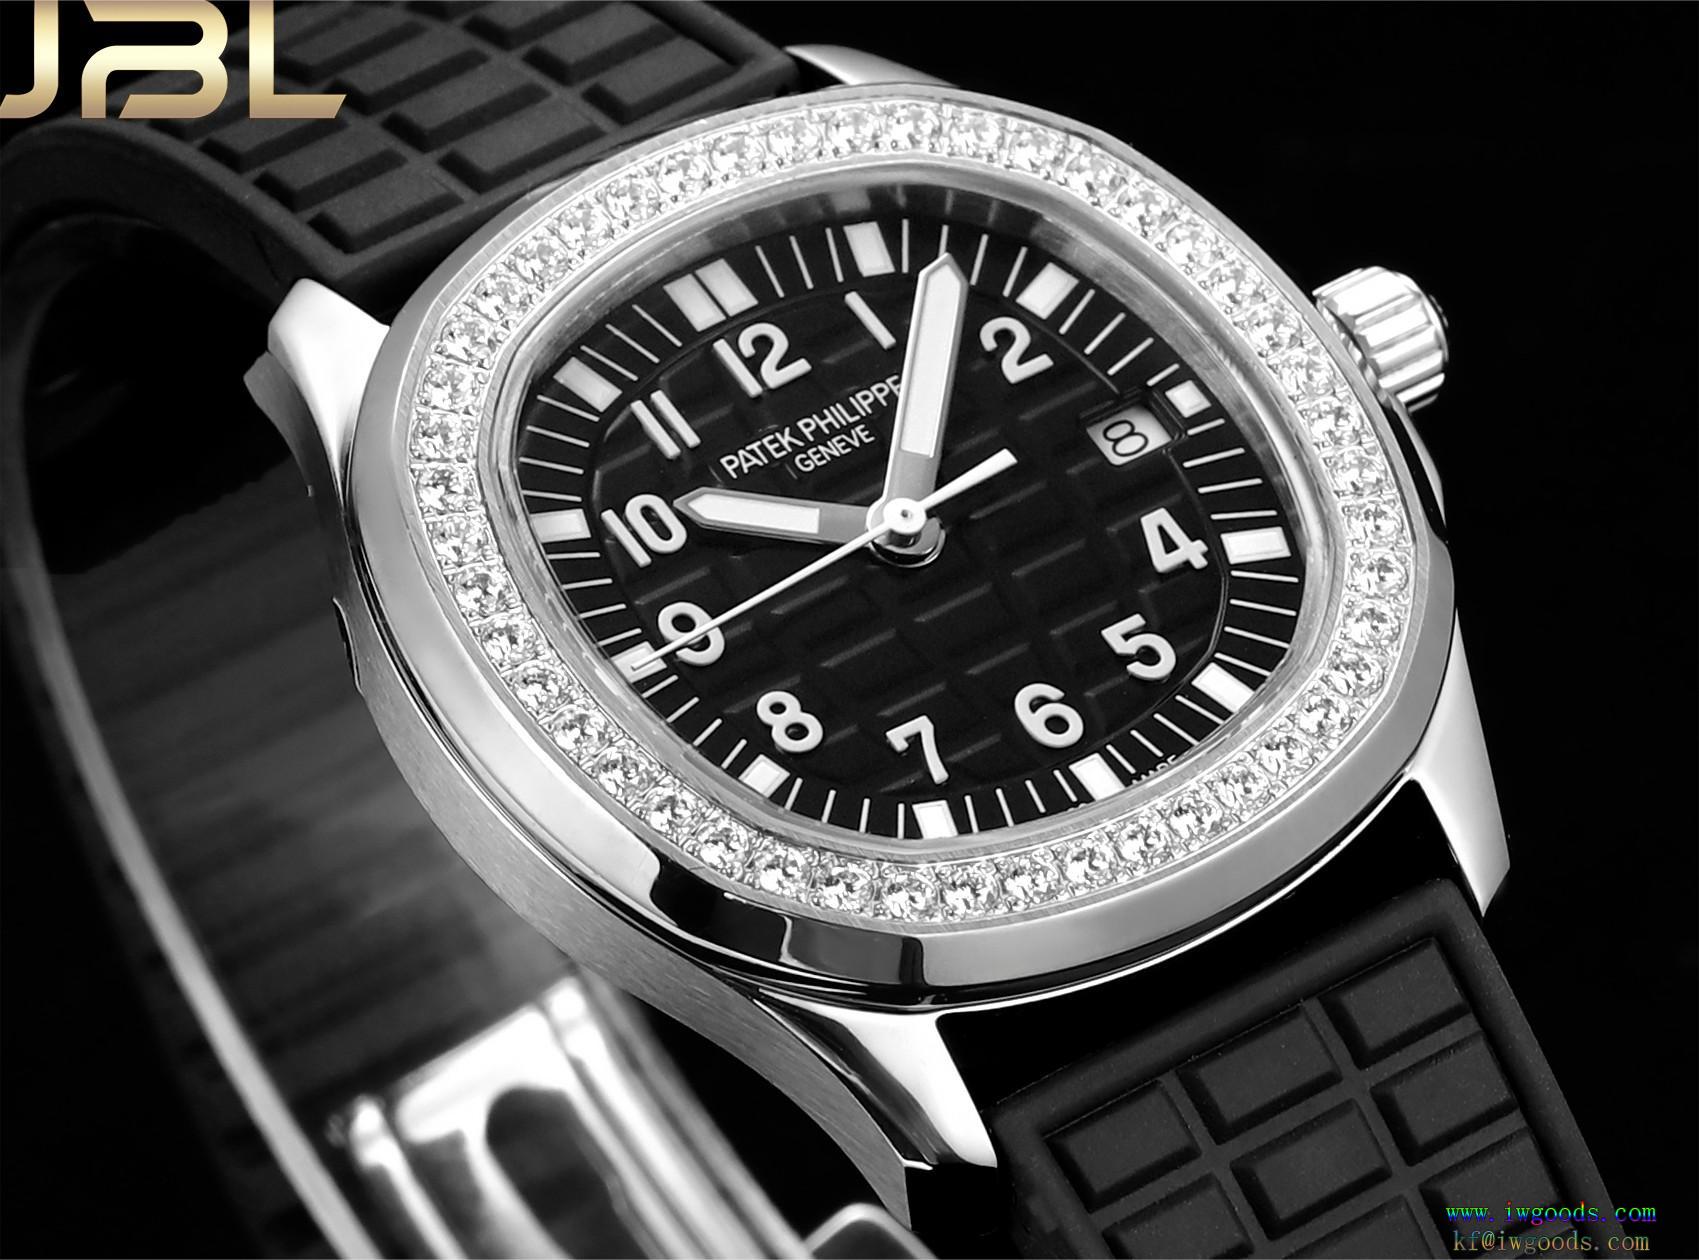 クォーツウォッチ/レディース腕時計パテックフィリップ Patek Philippe機能性が素晴らしい上品シックなお品偽 ブランド 購入